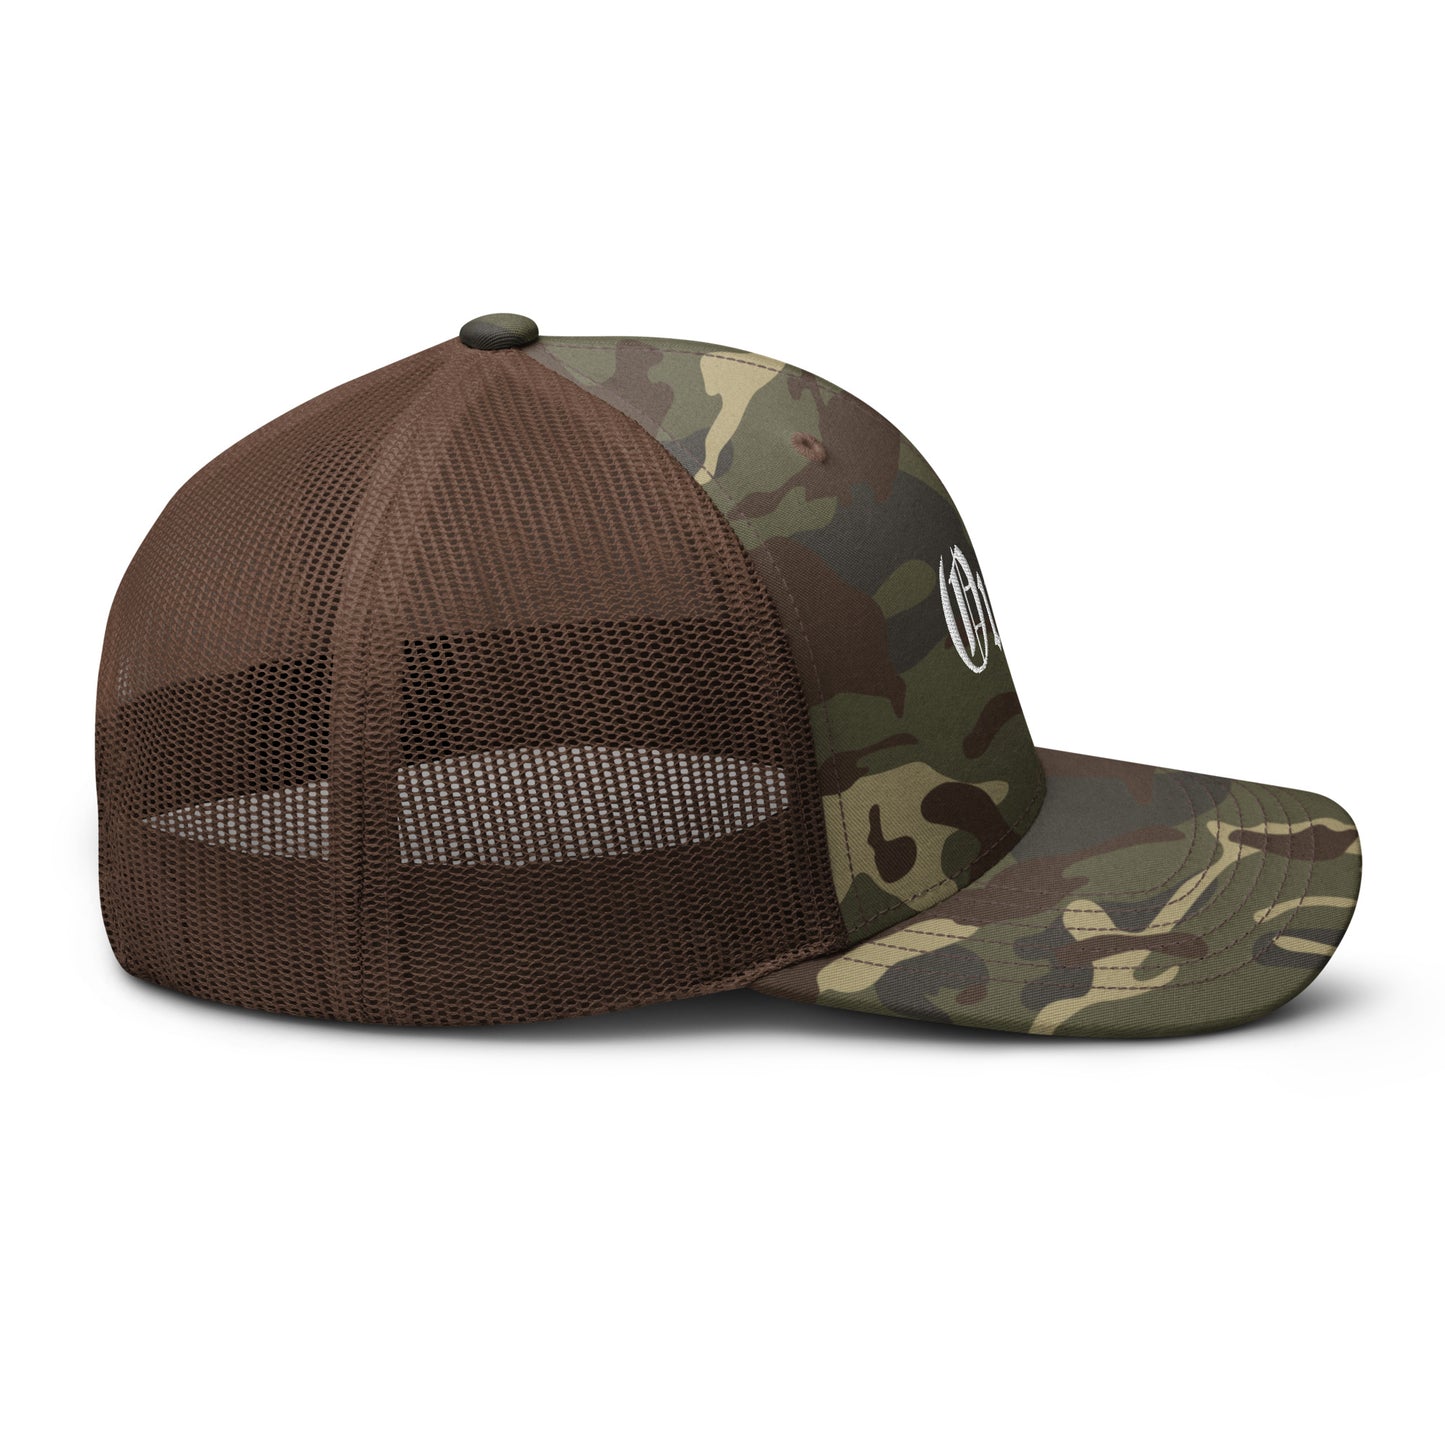 Oui'd Camouflage Trucker Hat